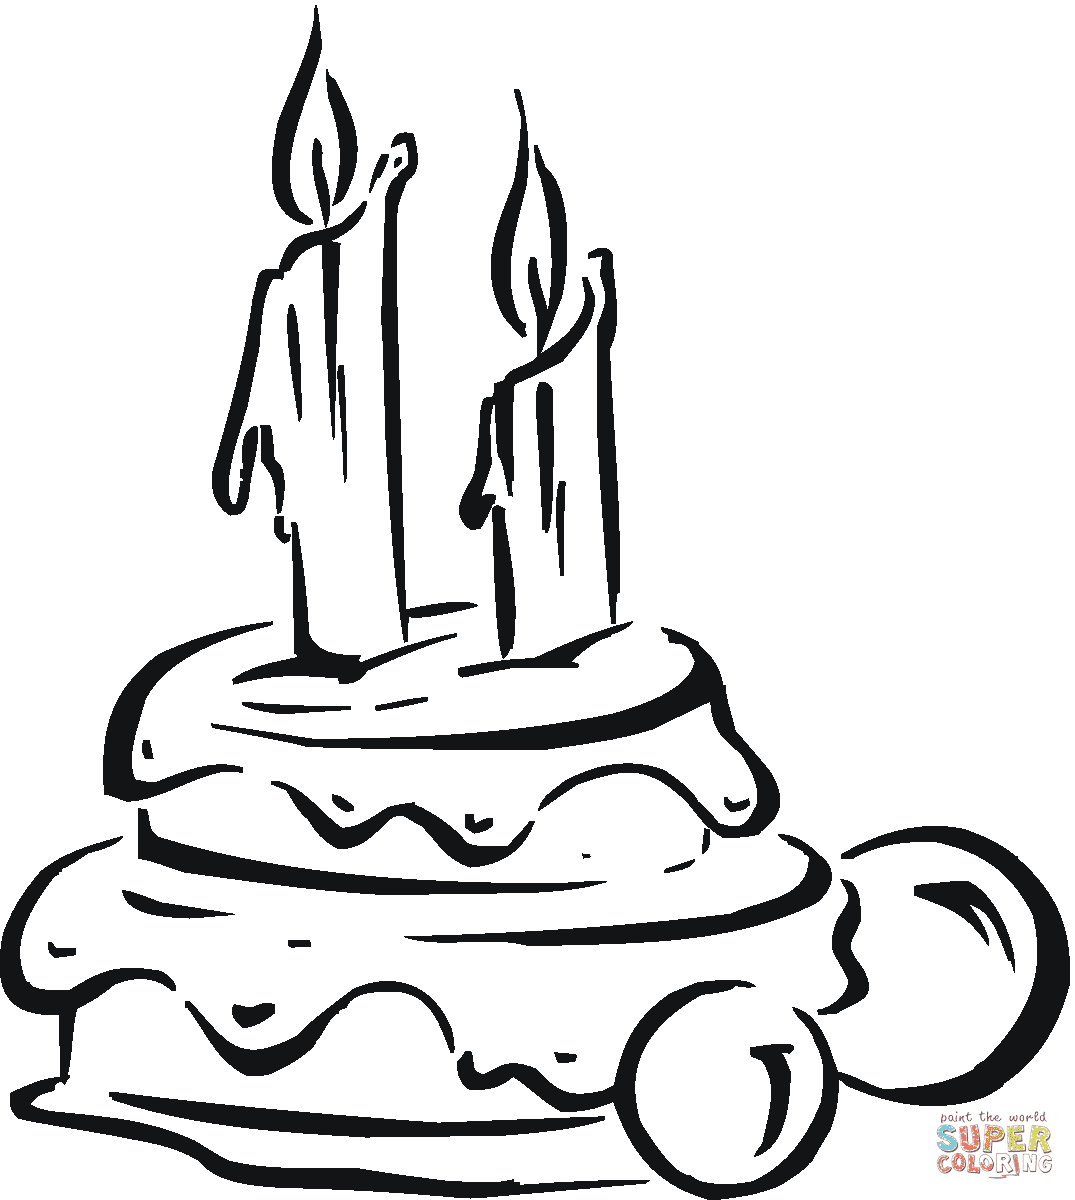 Geburtstagstorte mit Kerzen von Cake